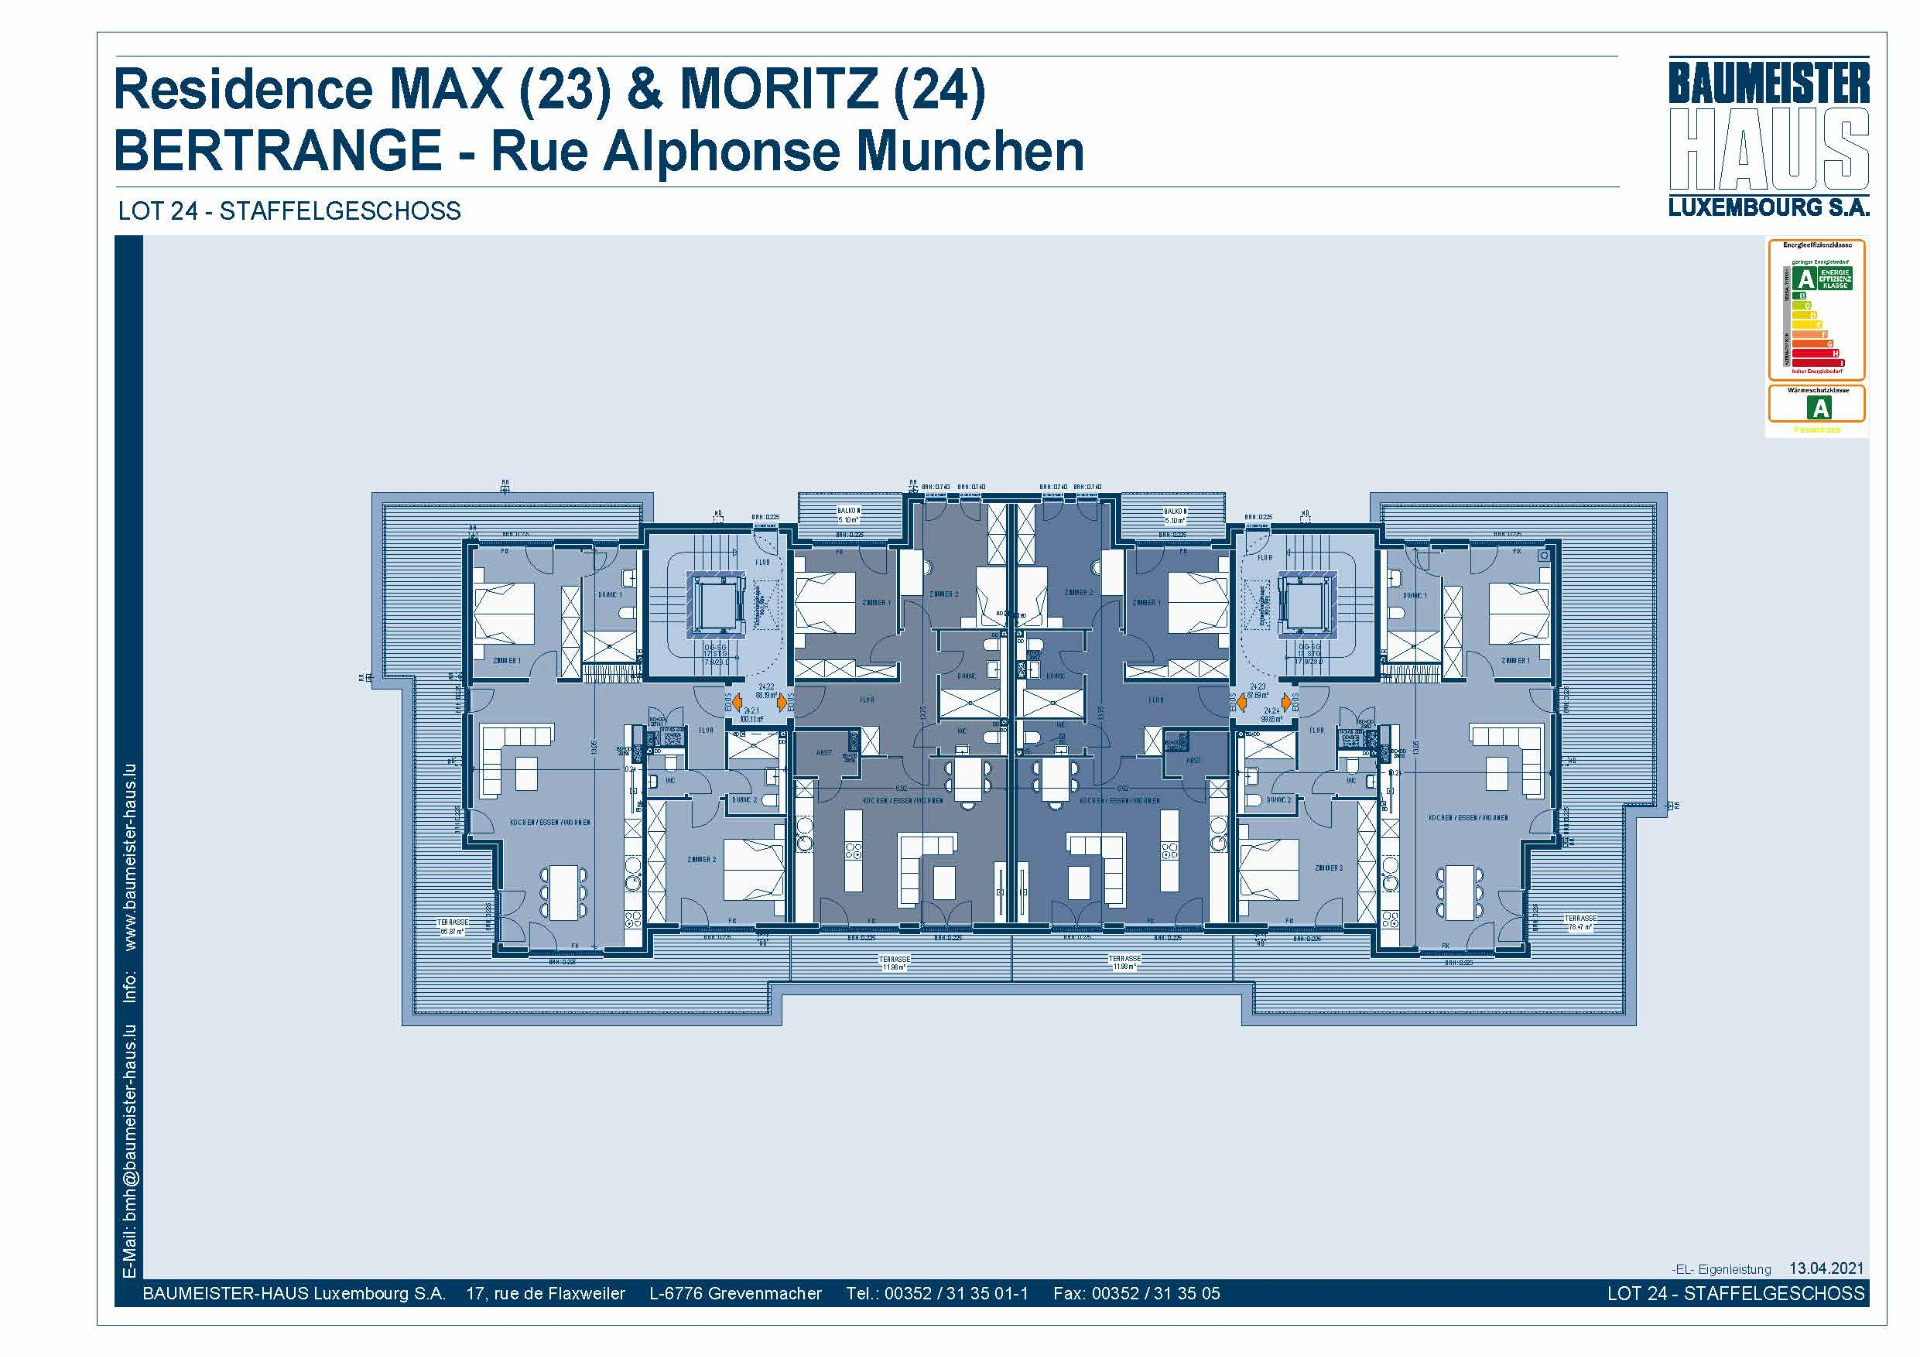 Residenz Moritz 24.2.4